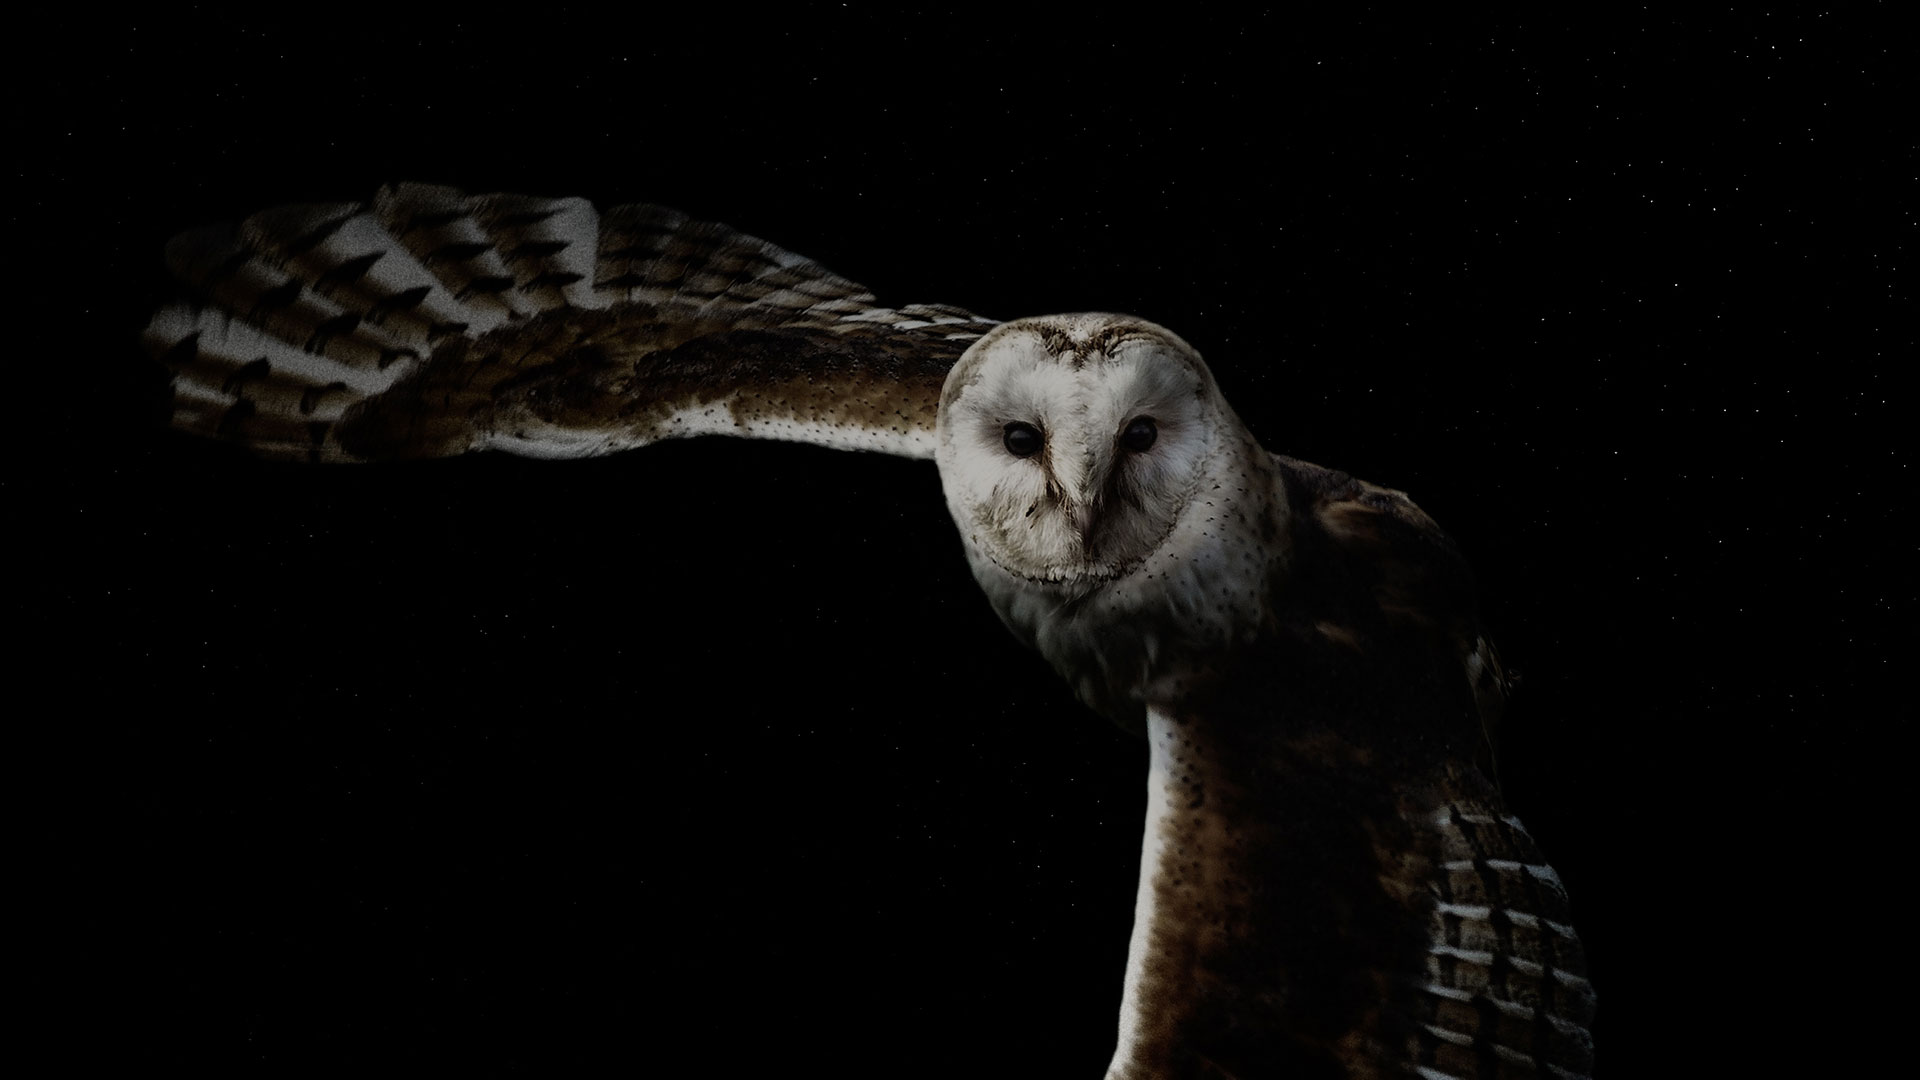 Owl in flight at night